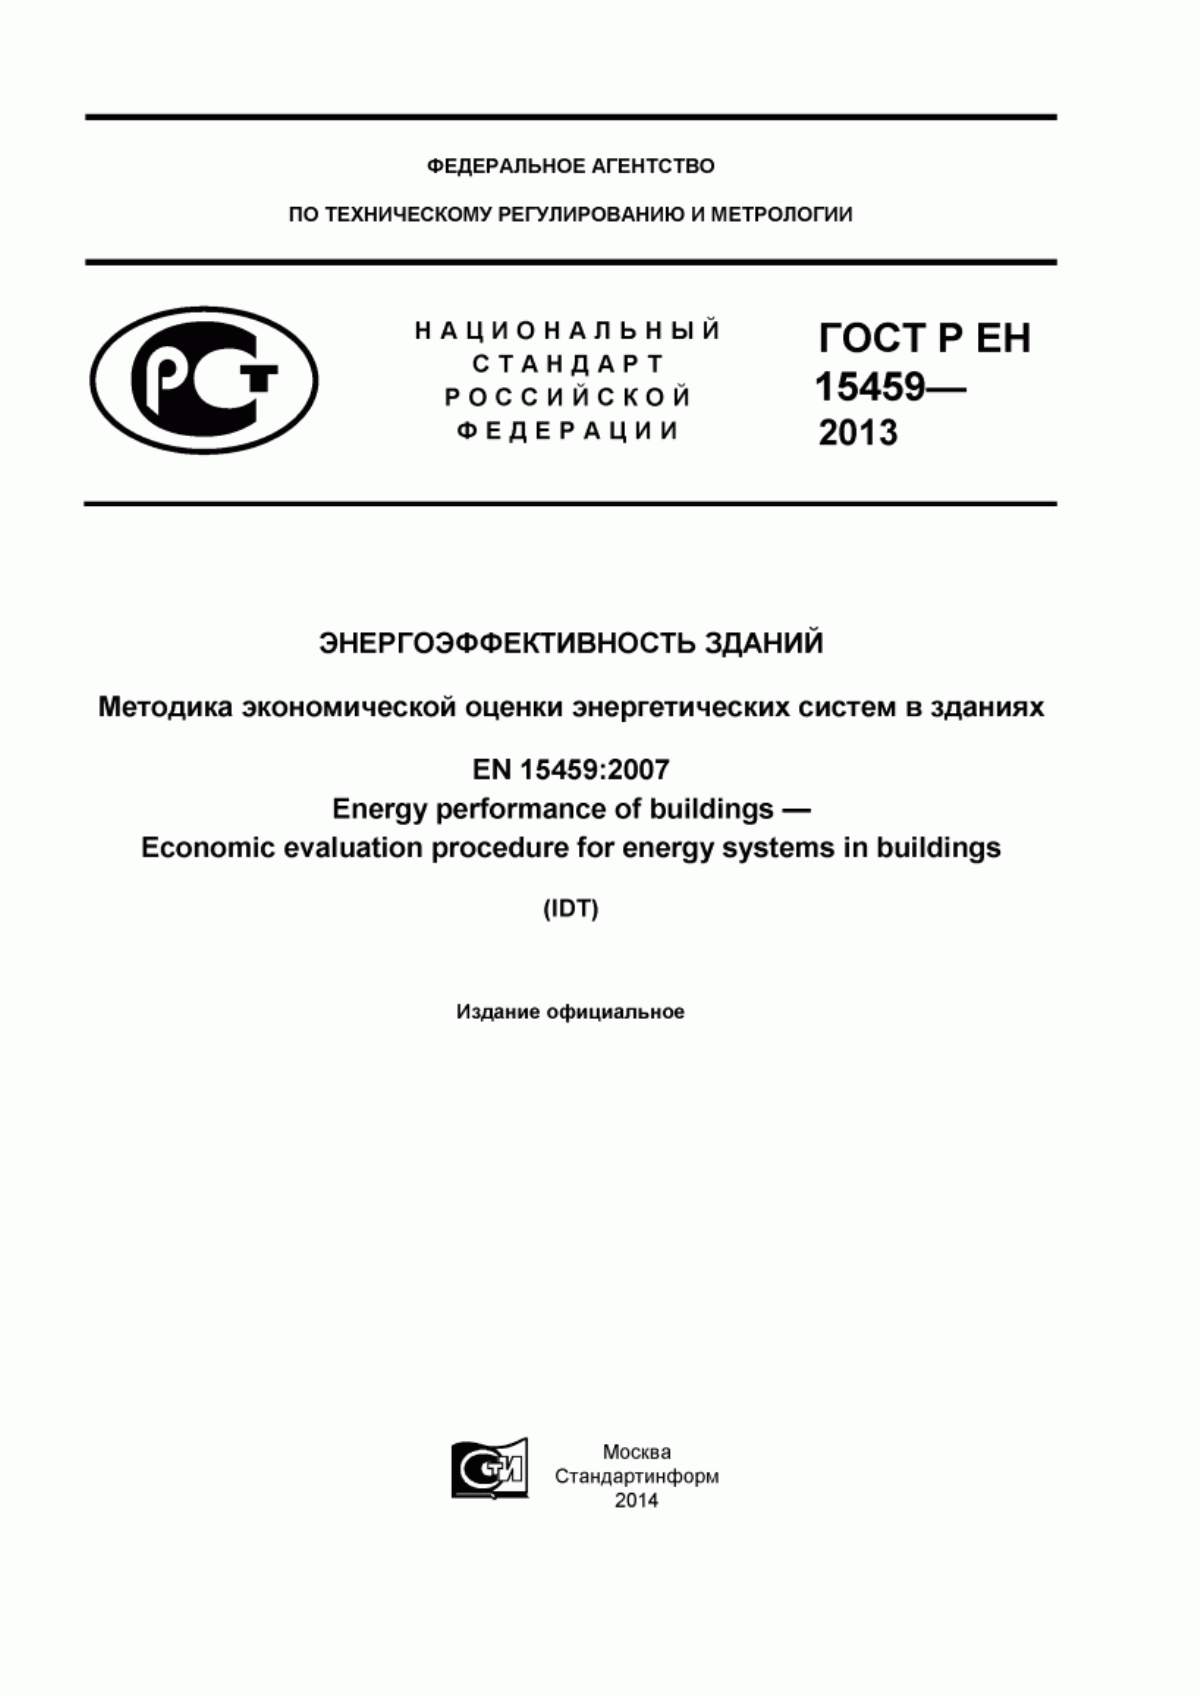 ГОСТ Р ЕН 15459-2013 Энергоэффективность зданий. Методика экономической оценки энергетических систем в зданиях